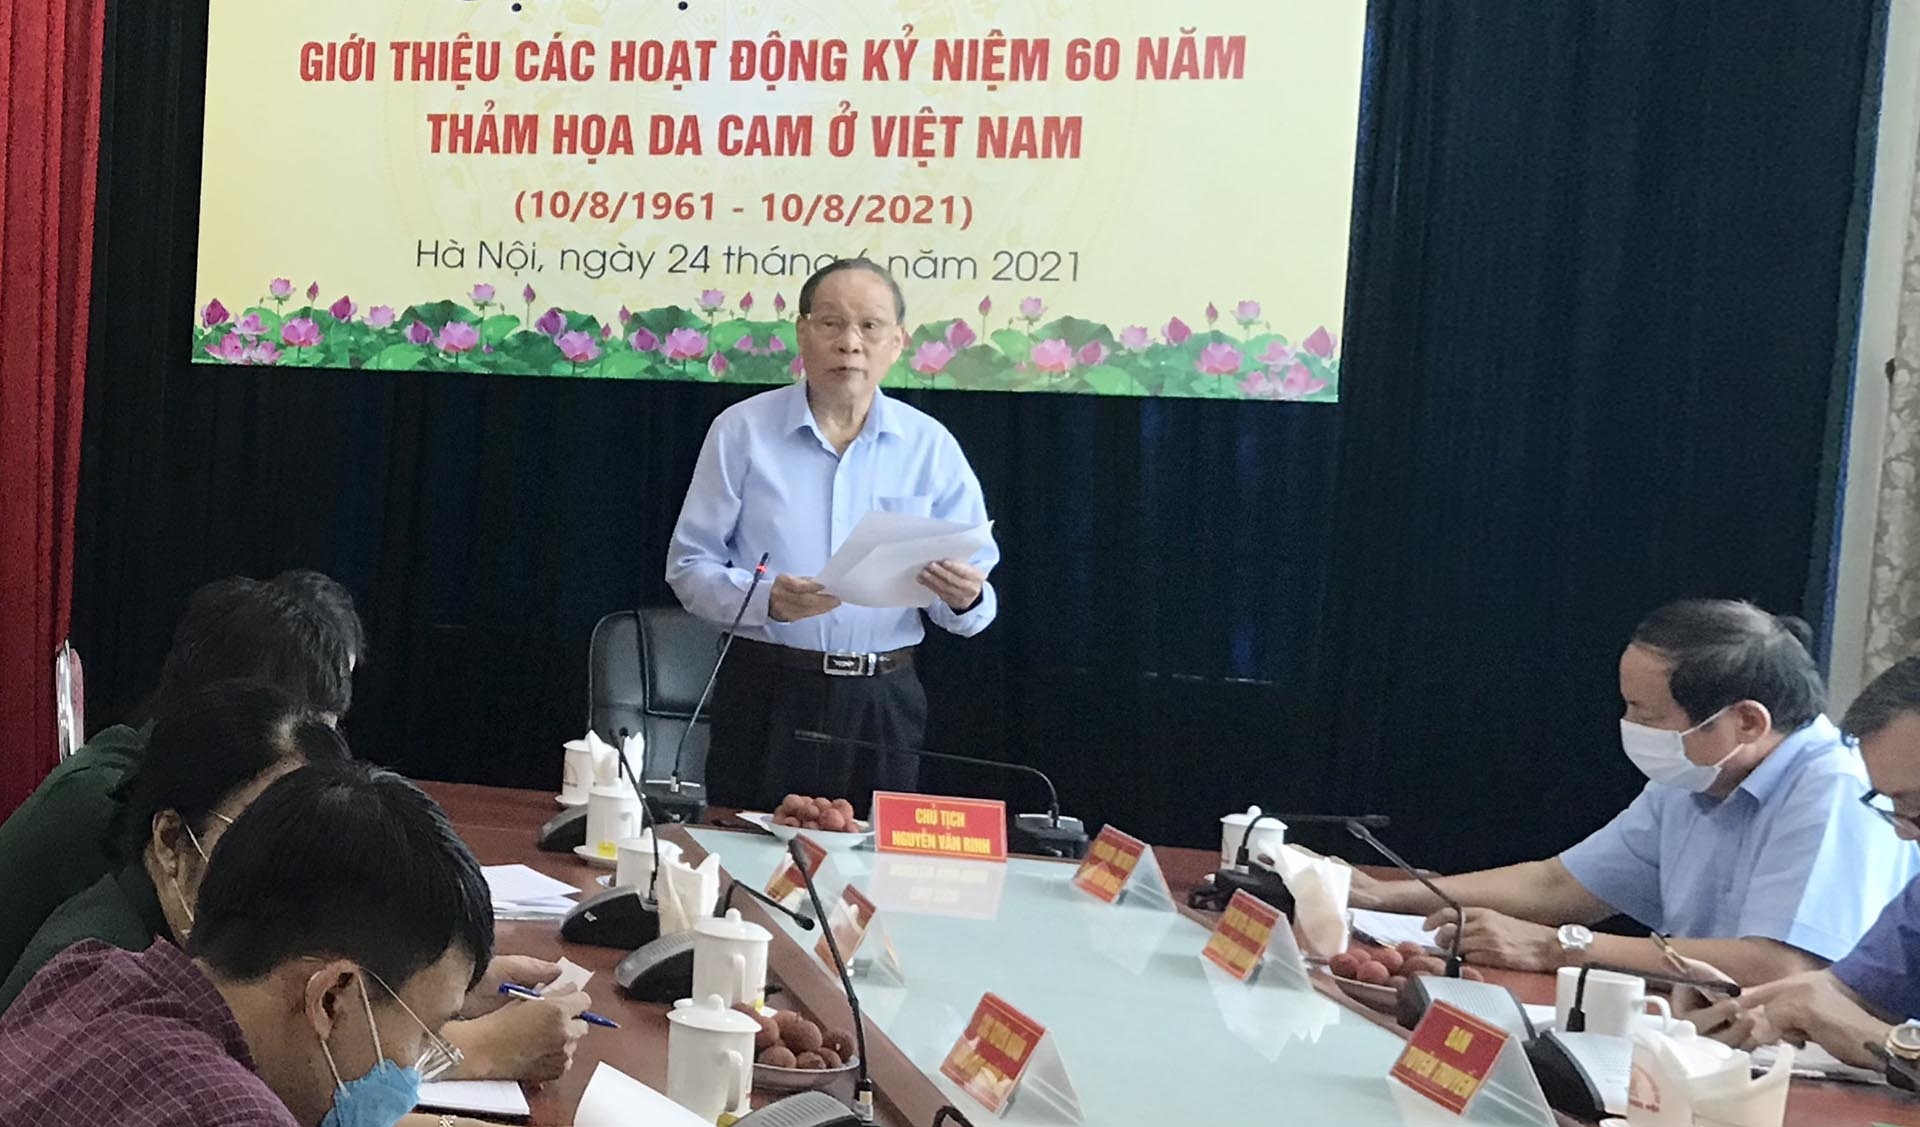 Thượng tướng Nguyễn Văn Rinh tại buổi giới thiệu hoạt động kỷ niệm 60 năm thảm họa da cam tại Việt Nam. (Ảnh: Lê An)